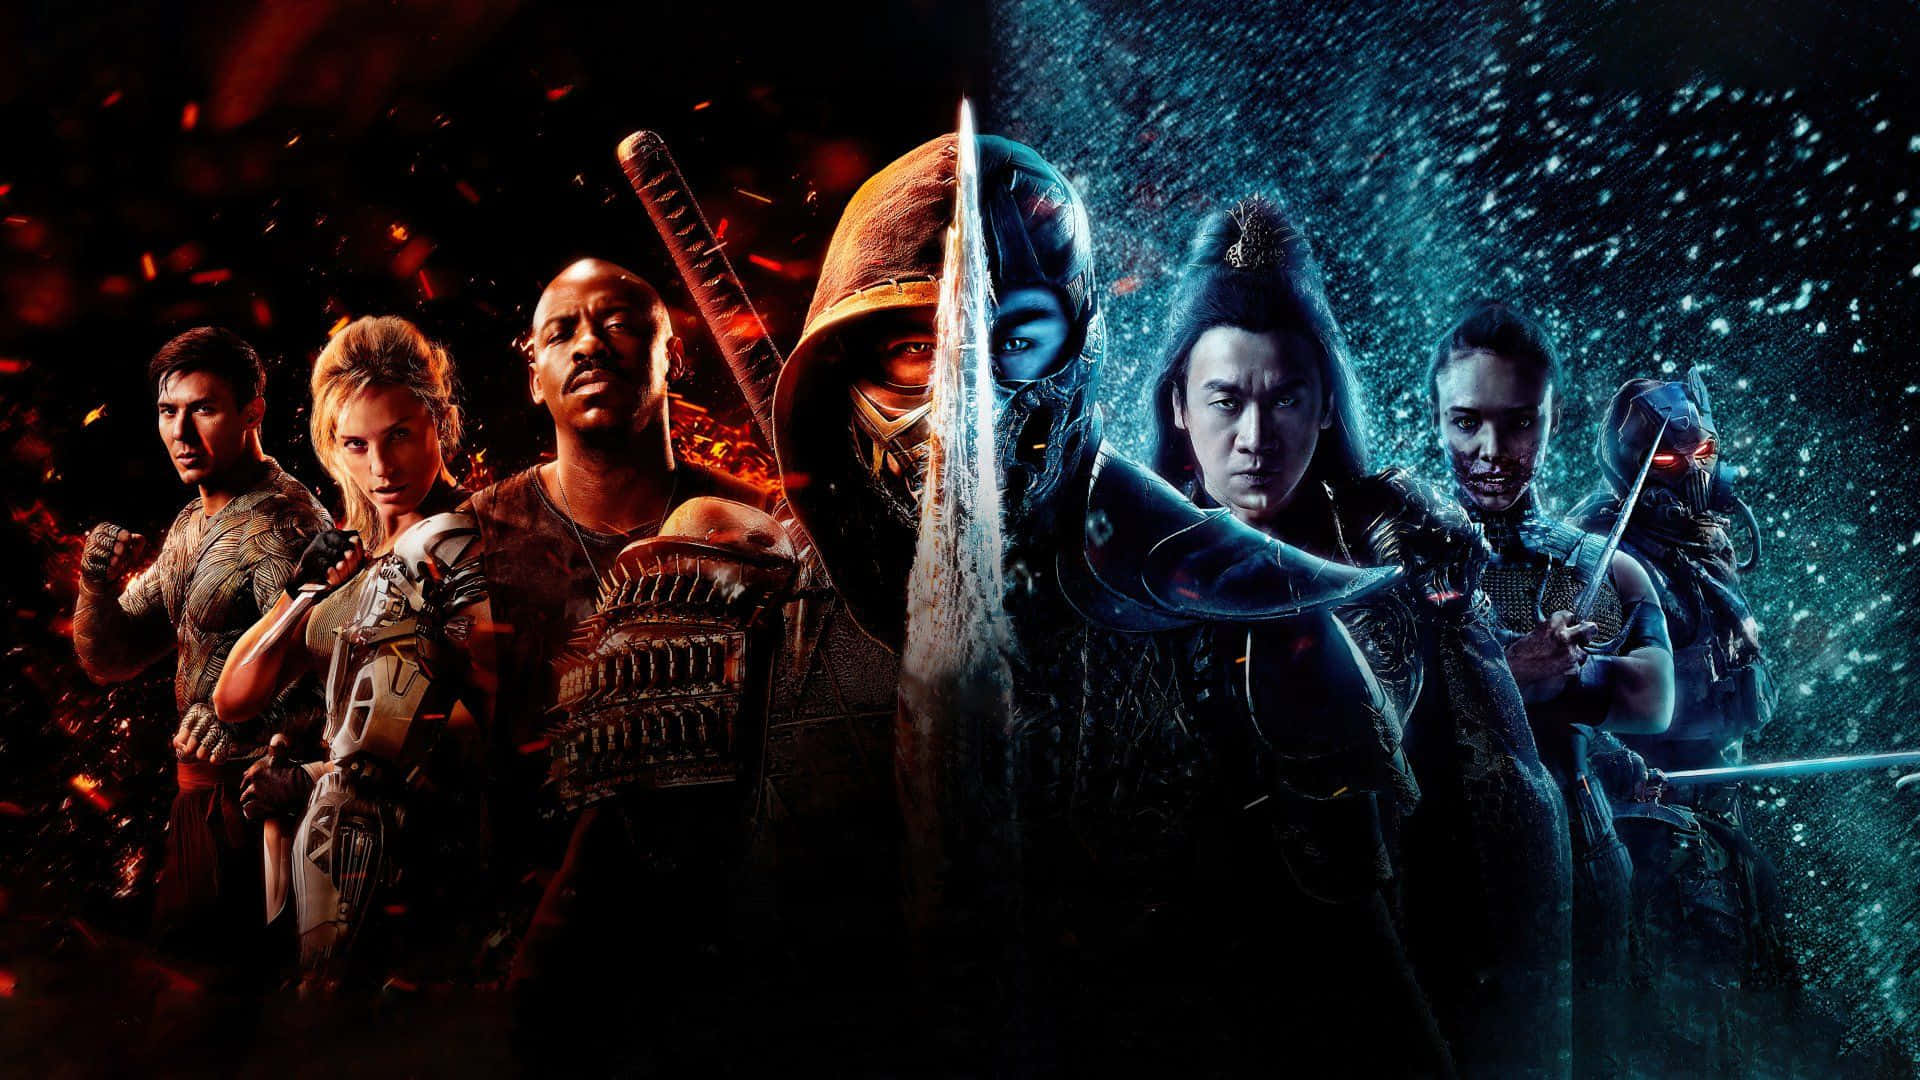 Raidenförbereder Sig För Att Strida Mot Sina Fiender I Den Ikoniska Mortal Kombat-serien.